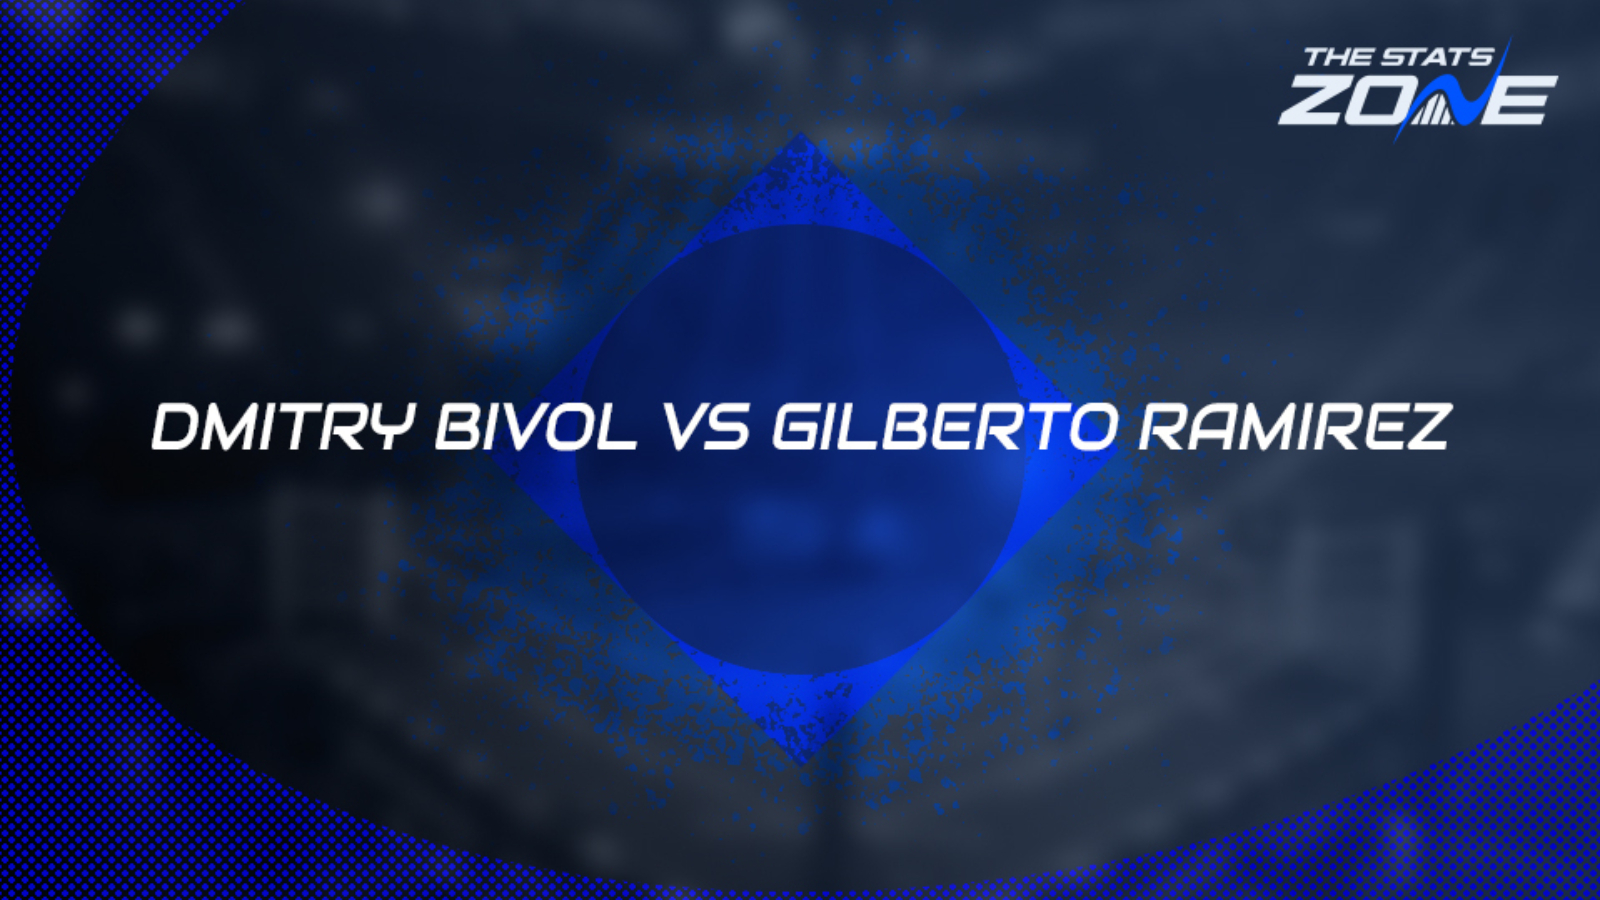 Dmitry Bivol vs Gilberto Ramirez Preview and Prediction